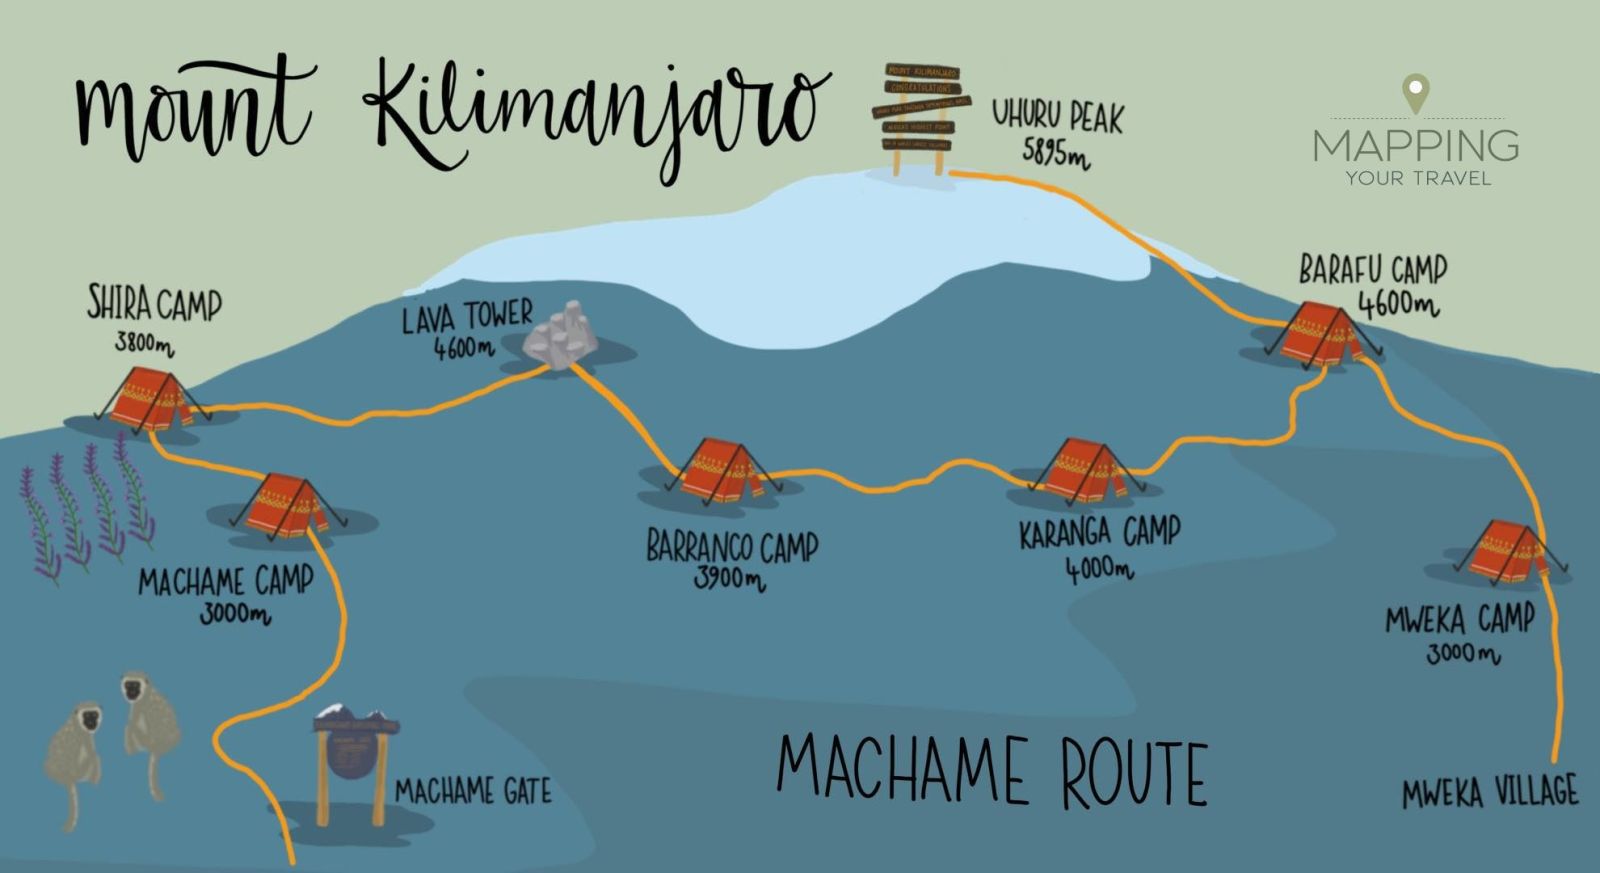 Machame route, Mt Kilimanjaro